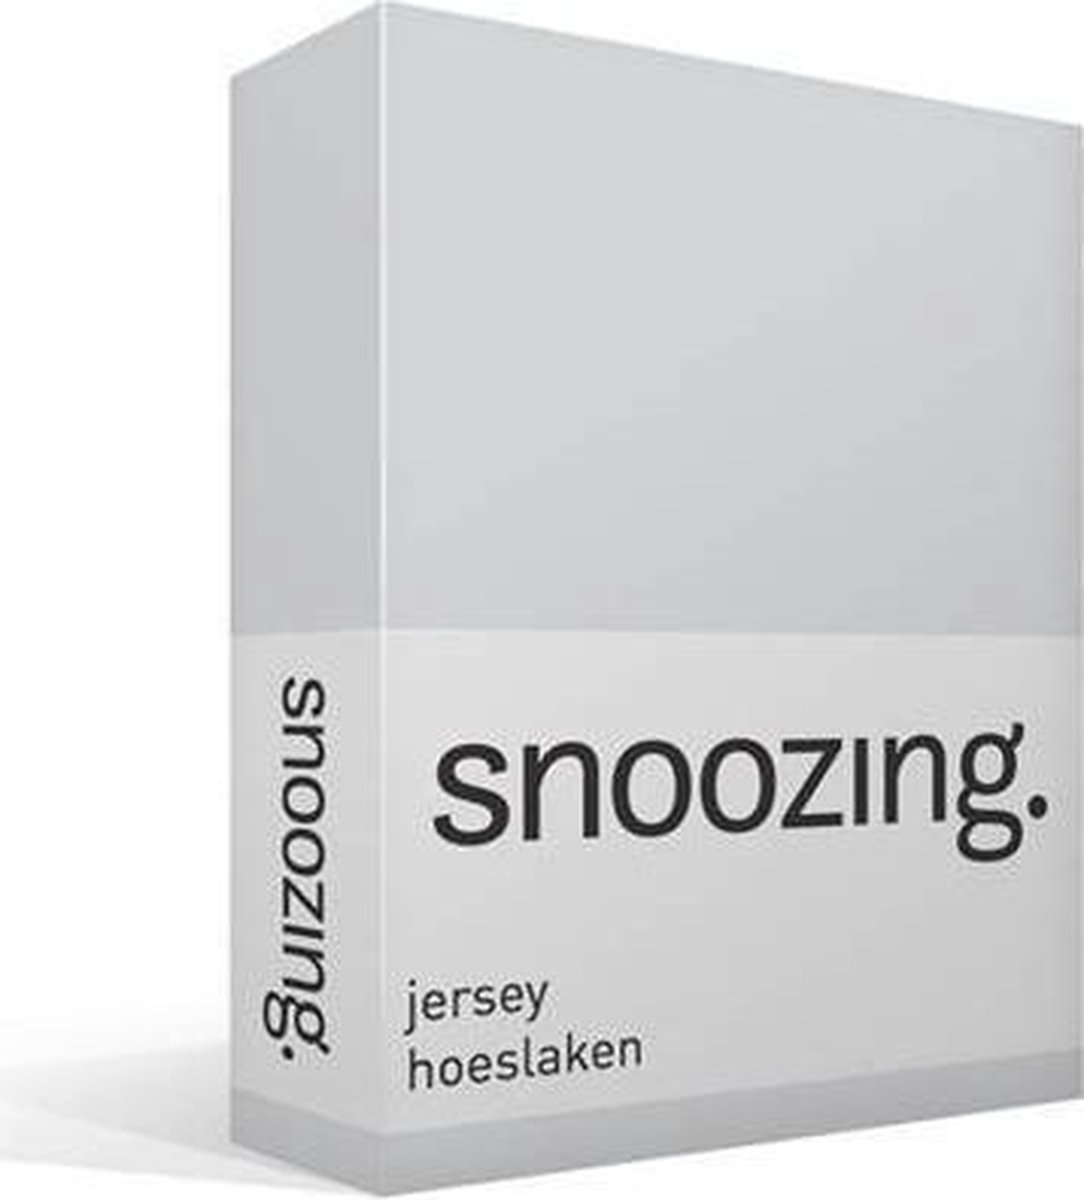 Snoozing Jersey Hoeslaken - 100% Gebreide Jersey Katoen - 1-persoons (70x200 Cm) - - Grijs